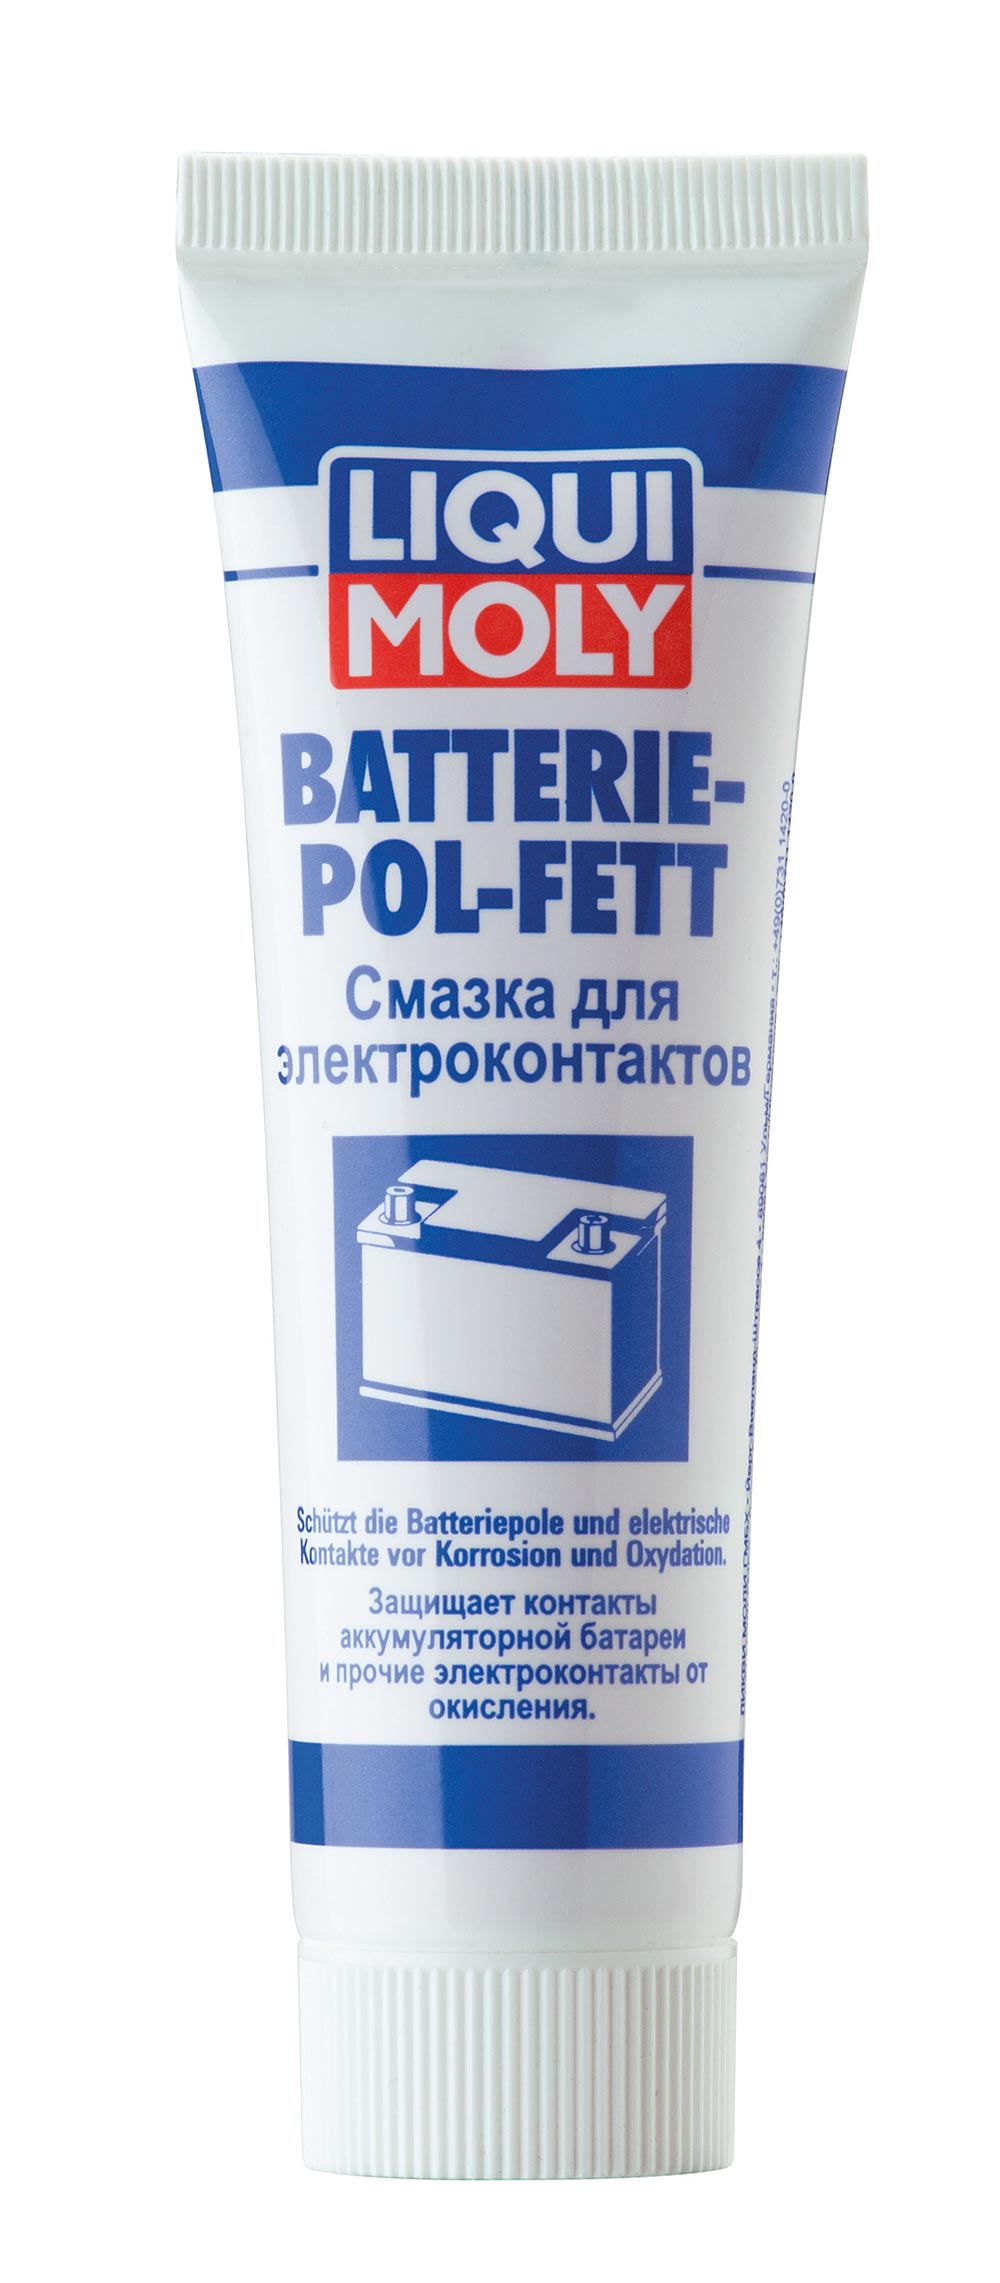 Смазка для электроконтактов Batterie-Pol-Fett 0.05мл